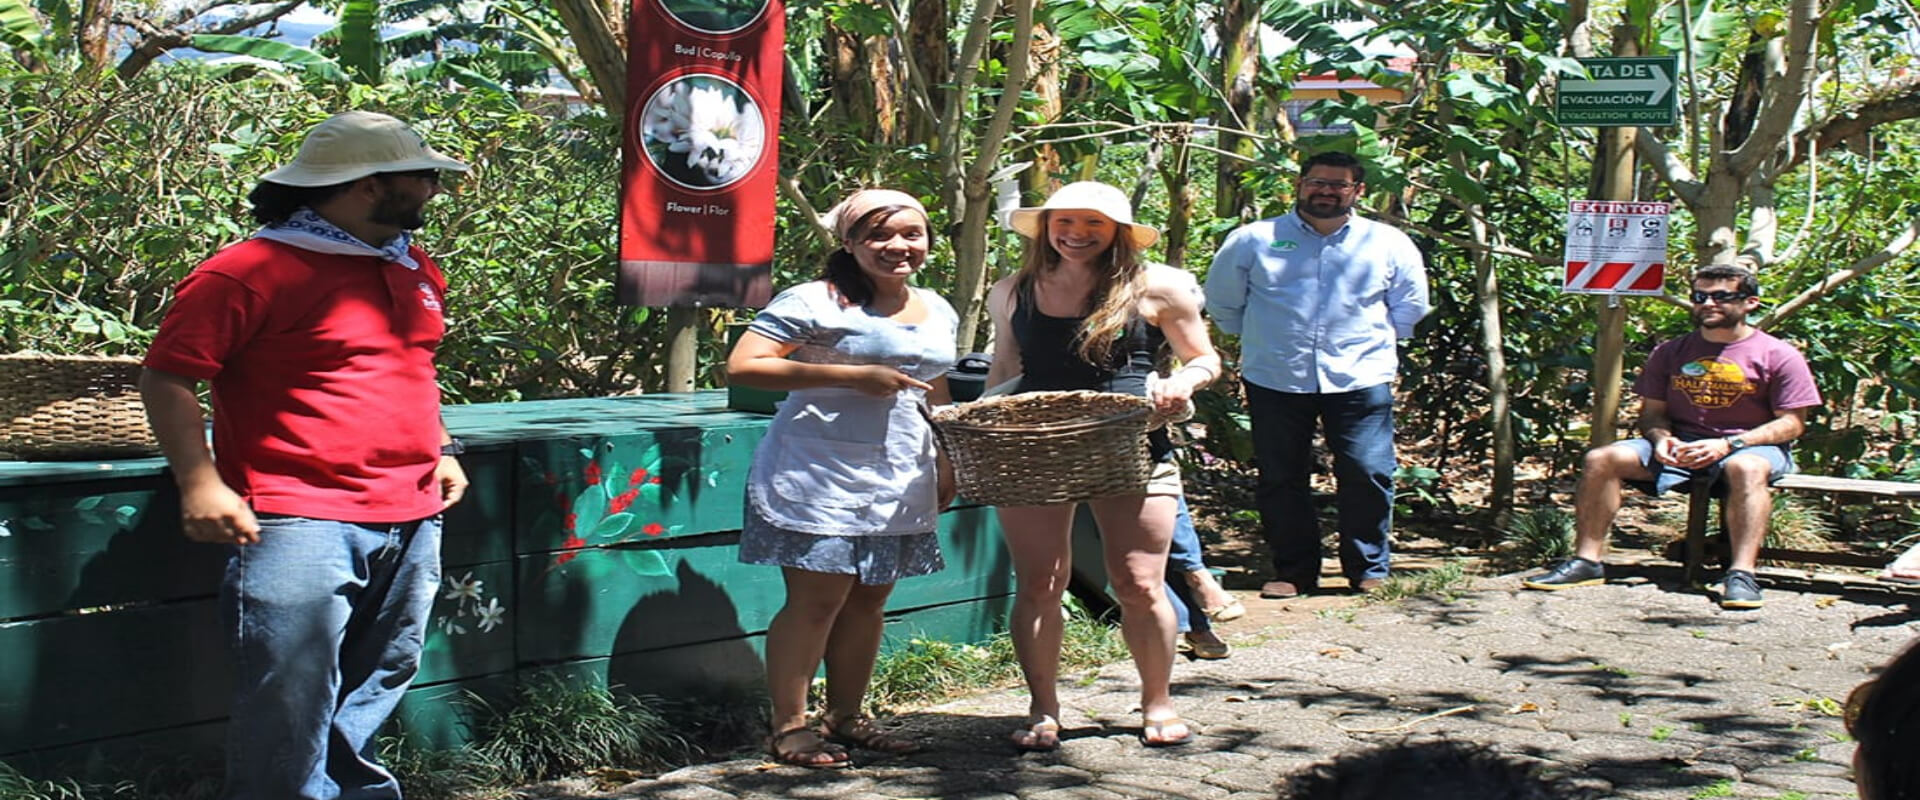 Tour de café y cataratas en San José  | Costa Rica Jade Tours